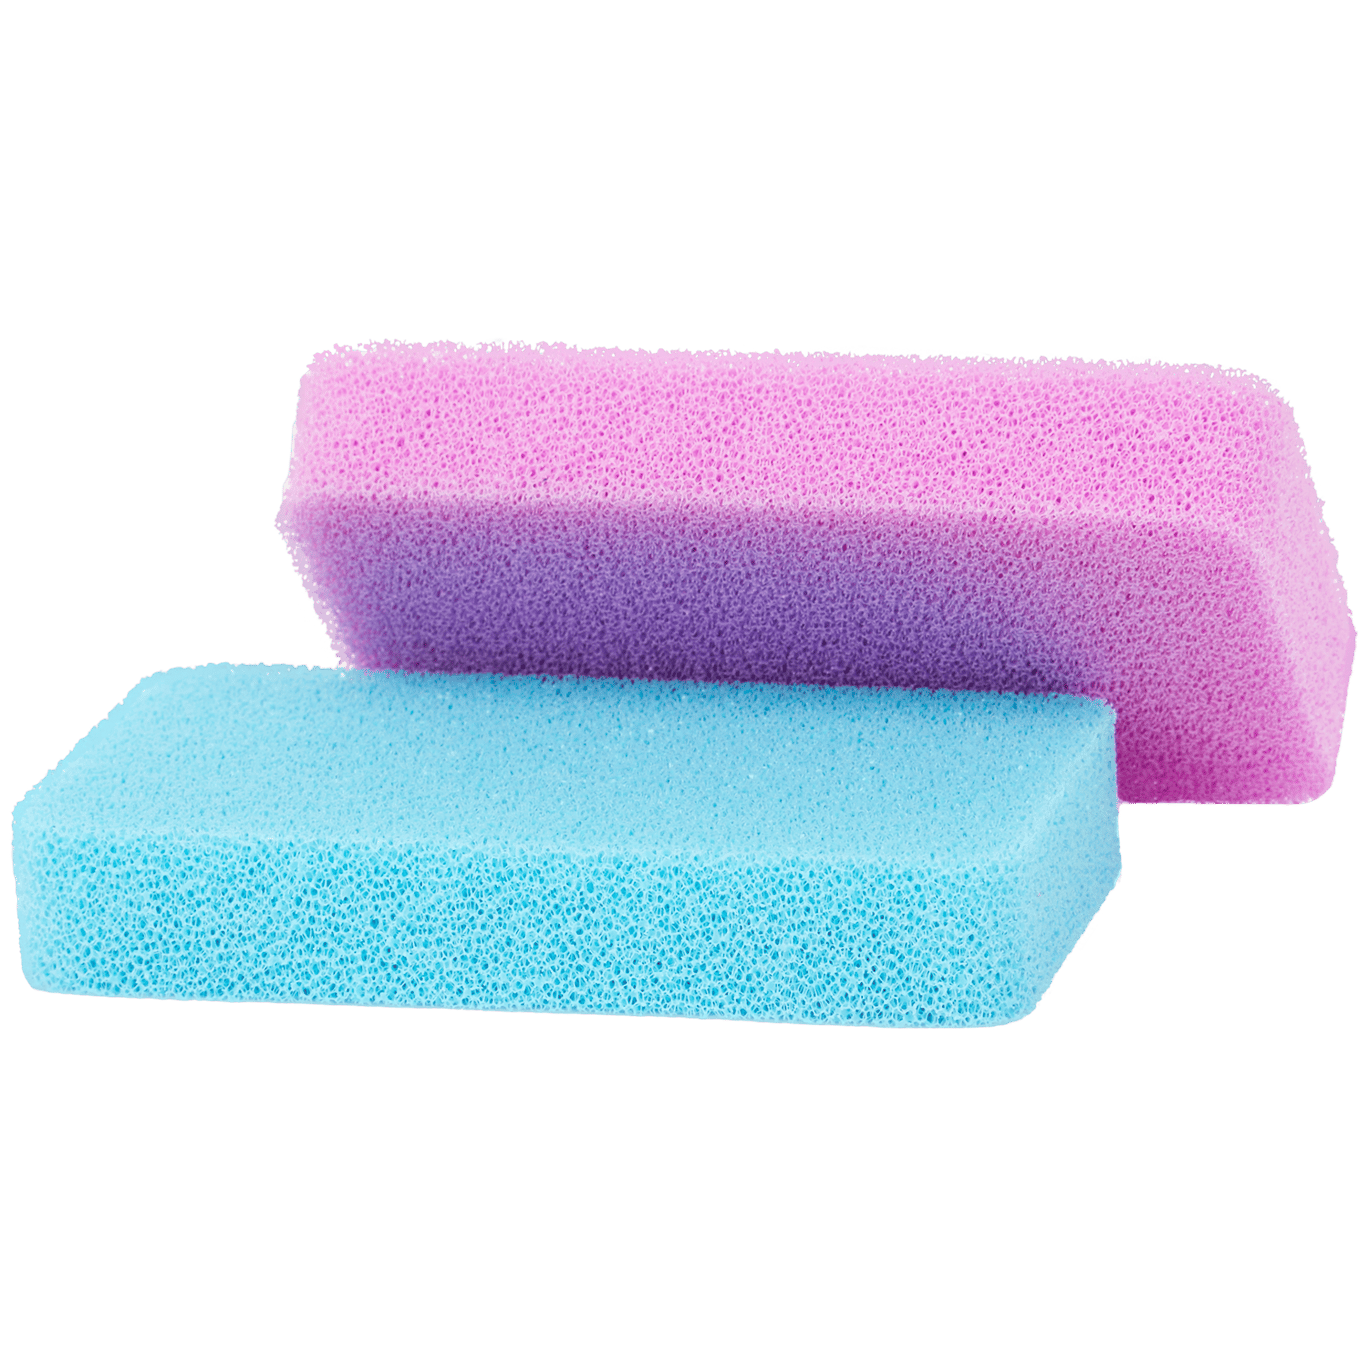 Esponjas de silicona CleanRite